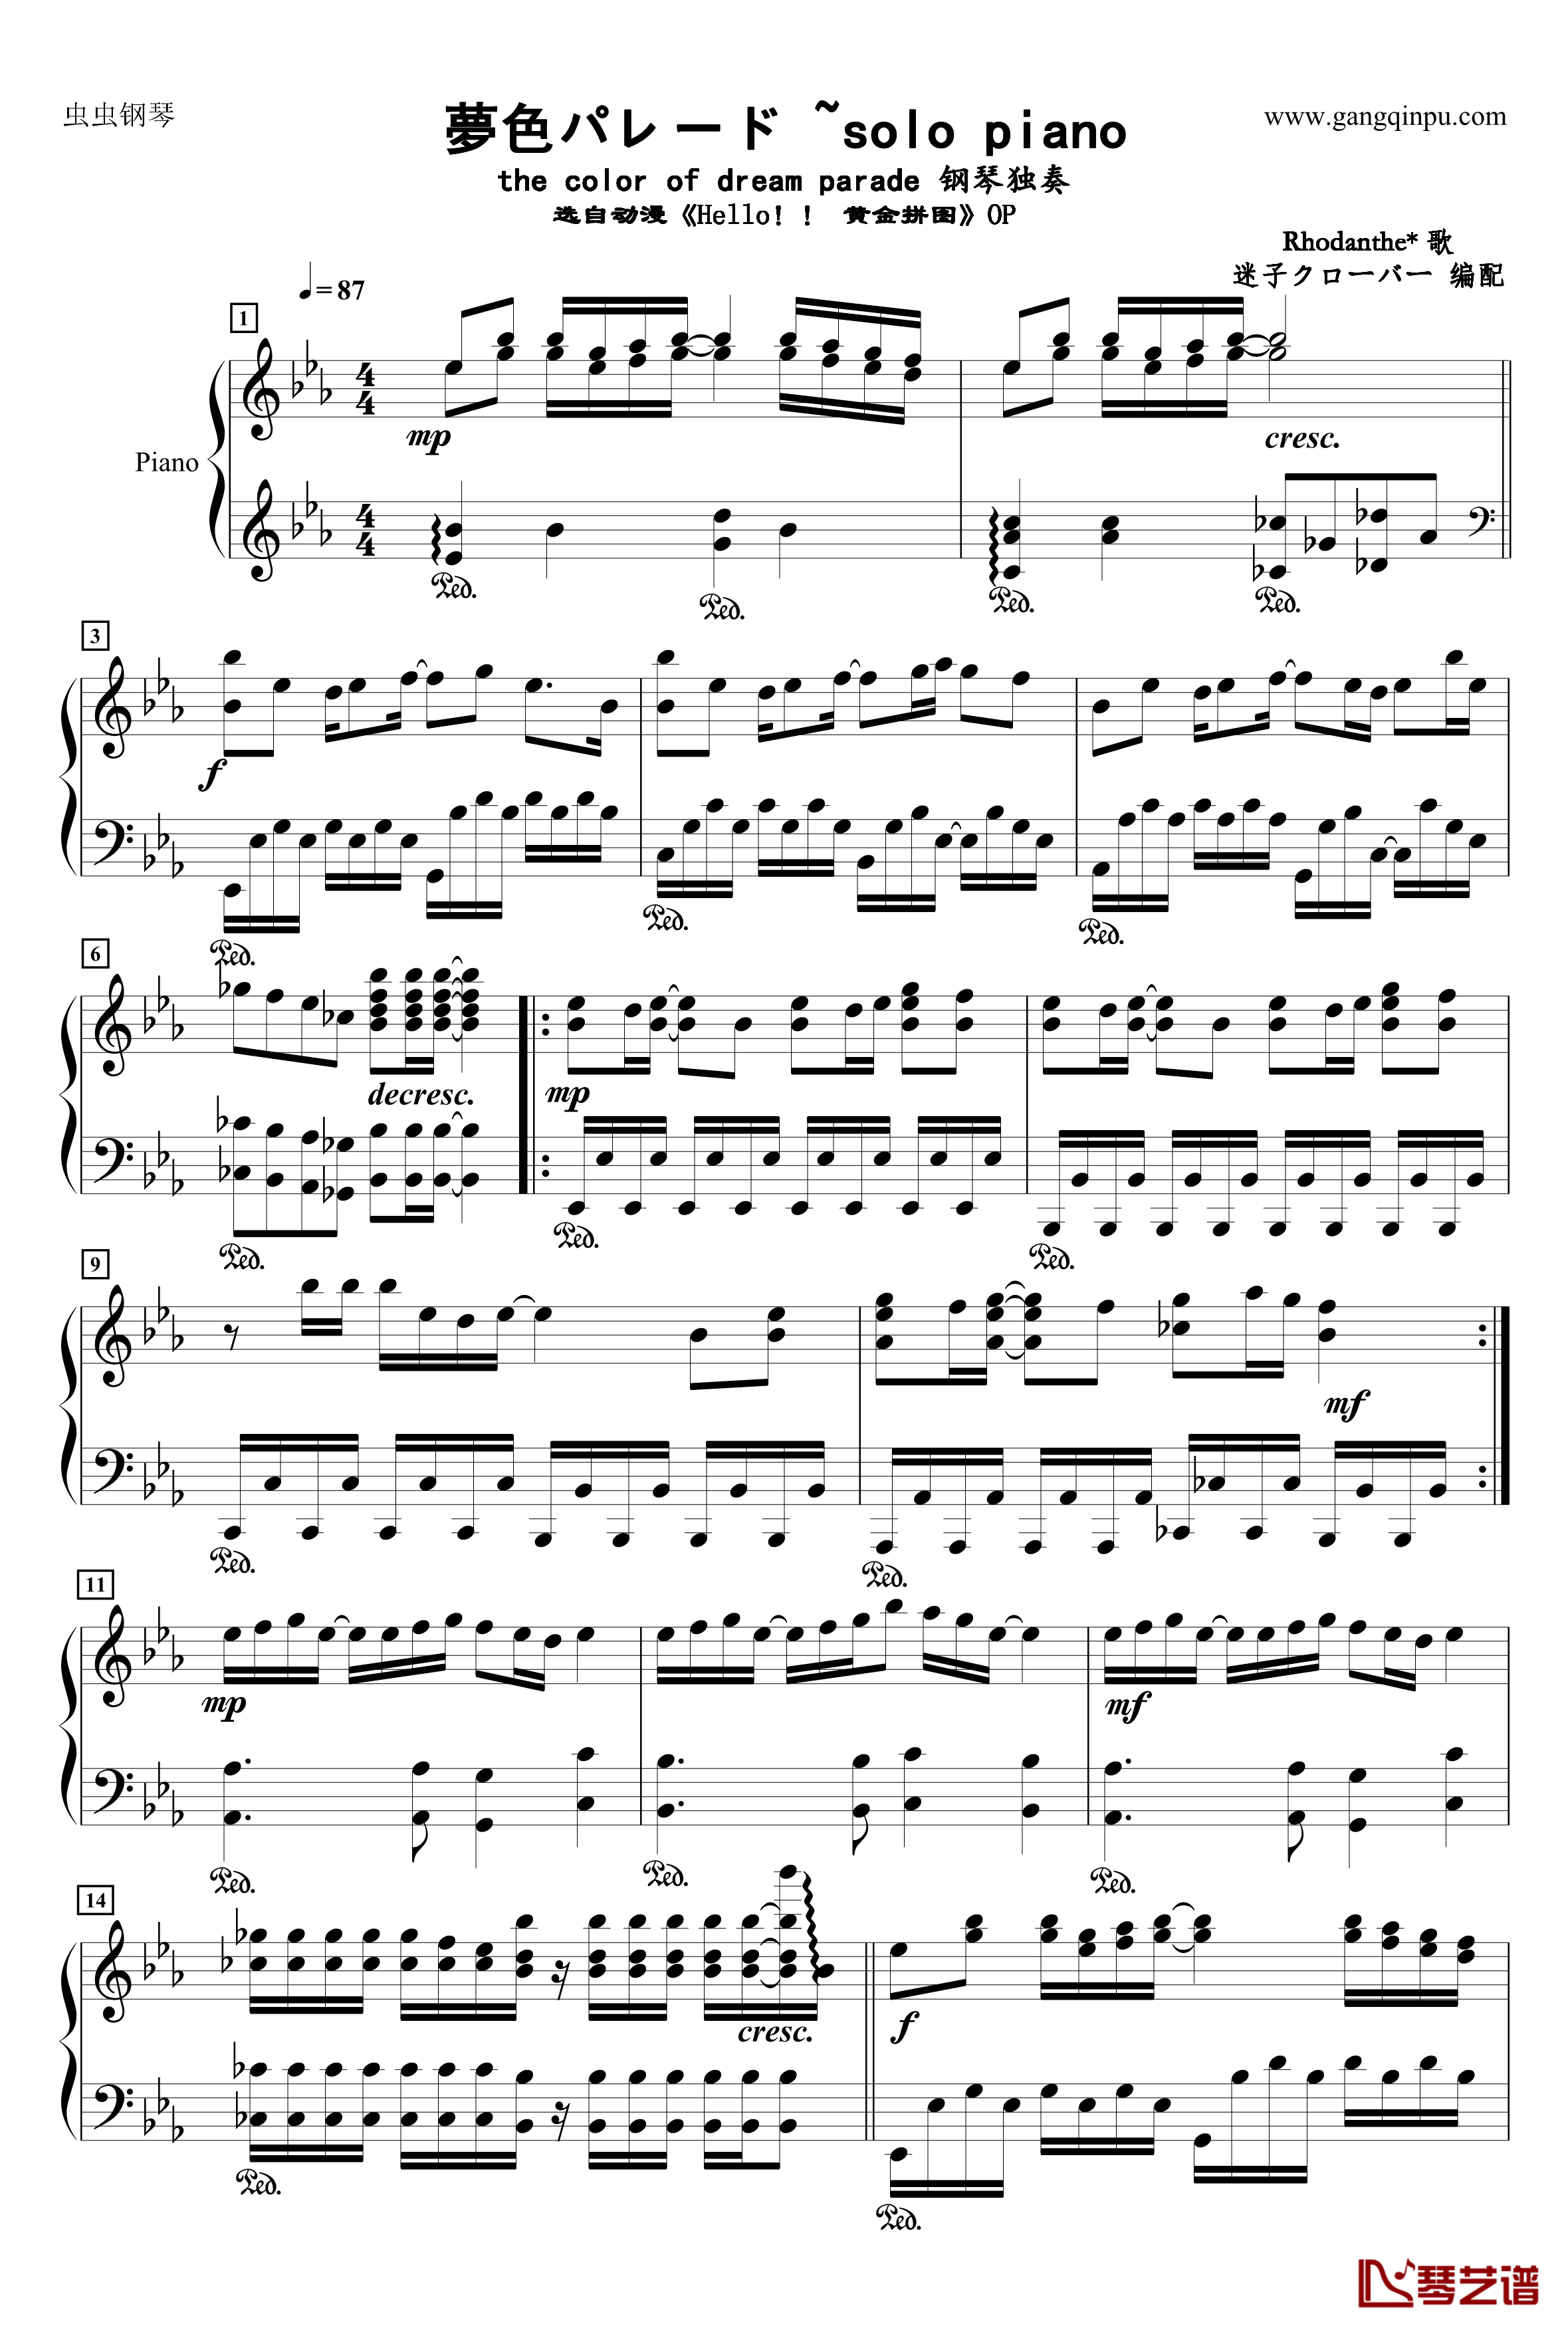 夢色パレード ~solo piano钢琴谱-黄金拼图1